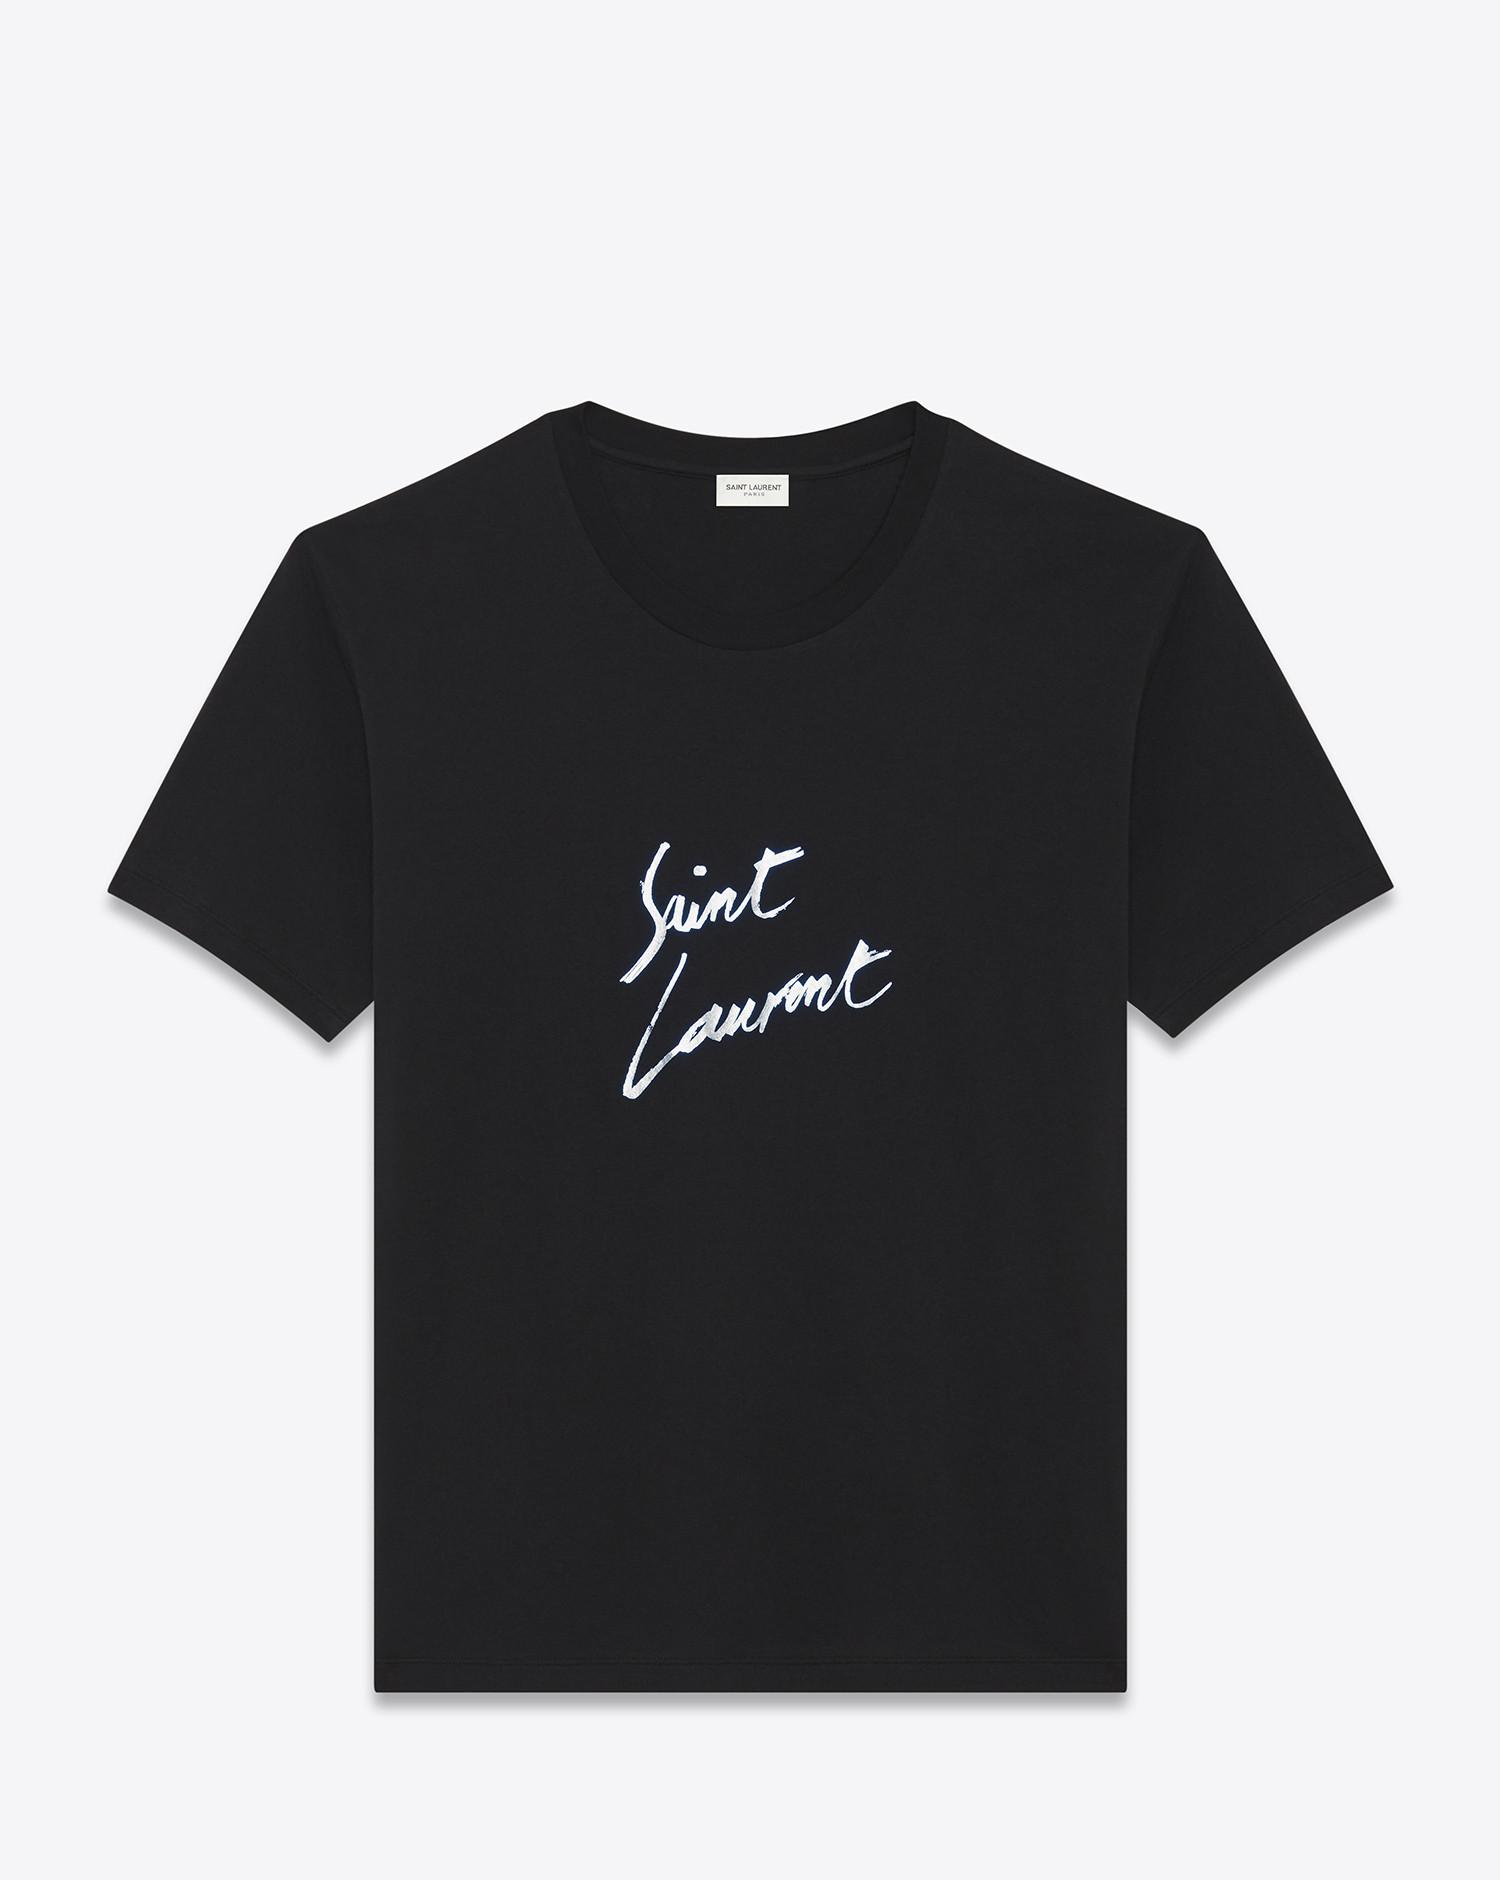 Saint Laurent Cotton Signature T-shirt in Chalk (Black) for Men - Lyst